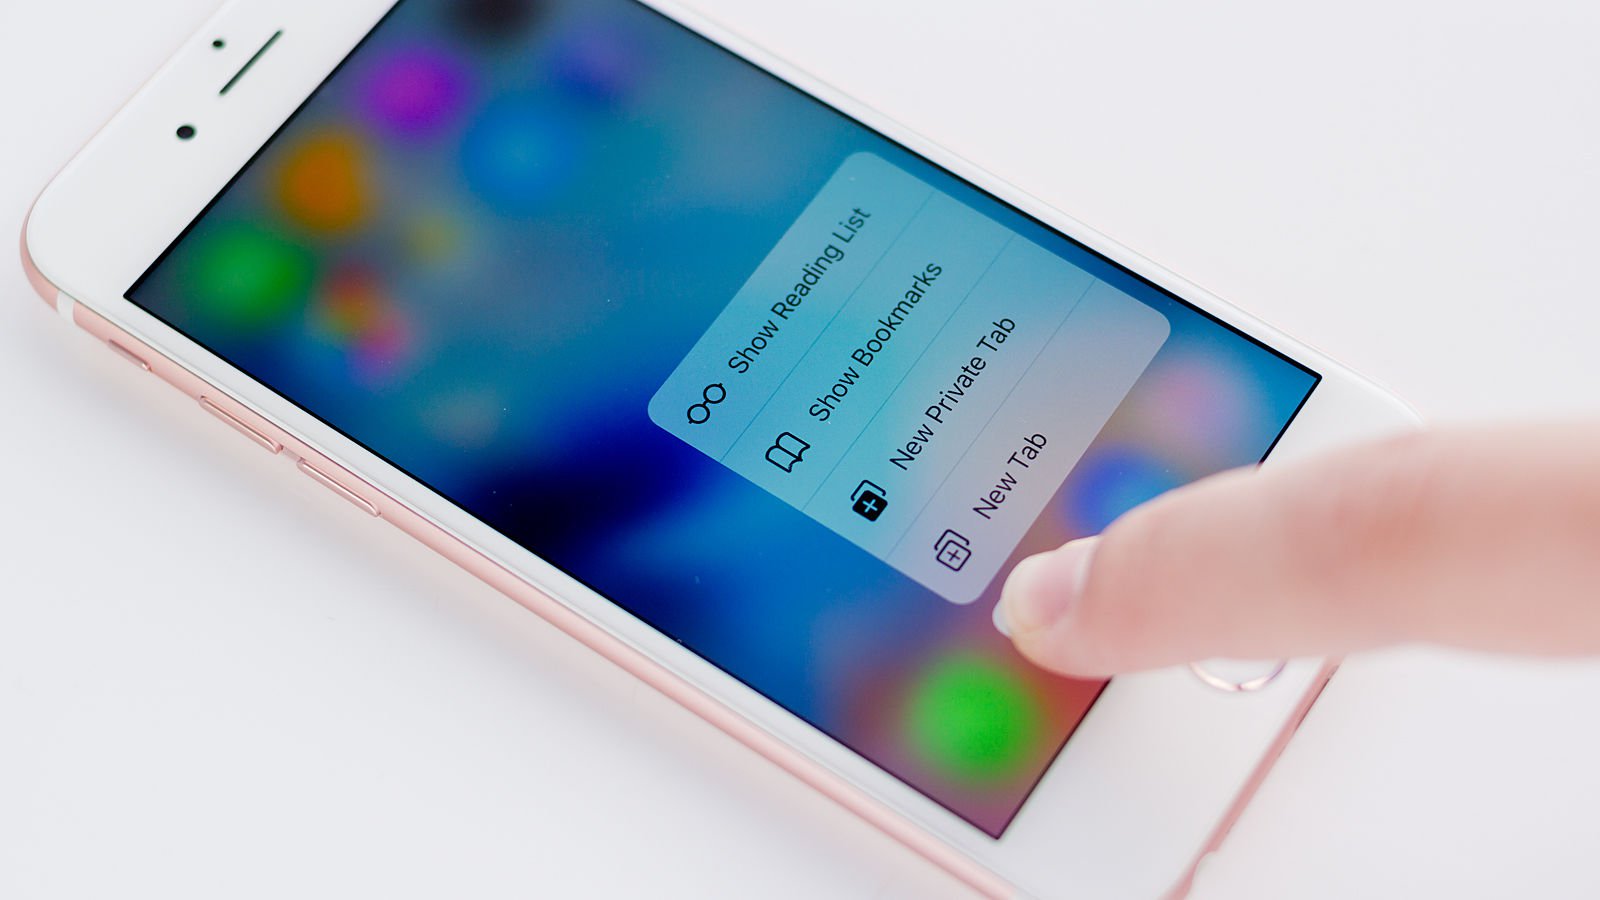 Samsung Display phát triển công nghệ 3-D Touch cho màn hình OLED, sẽ tích hợp trên iPhone 8